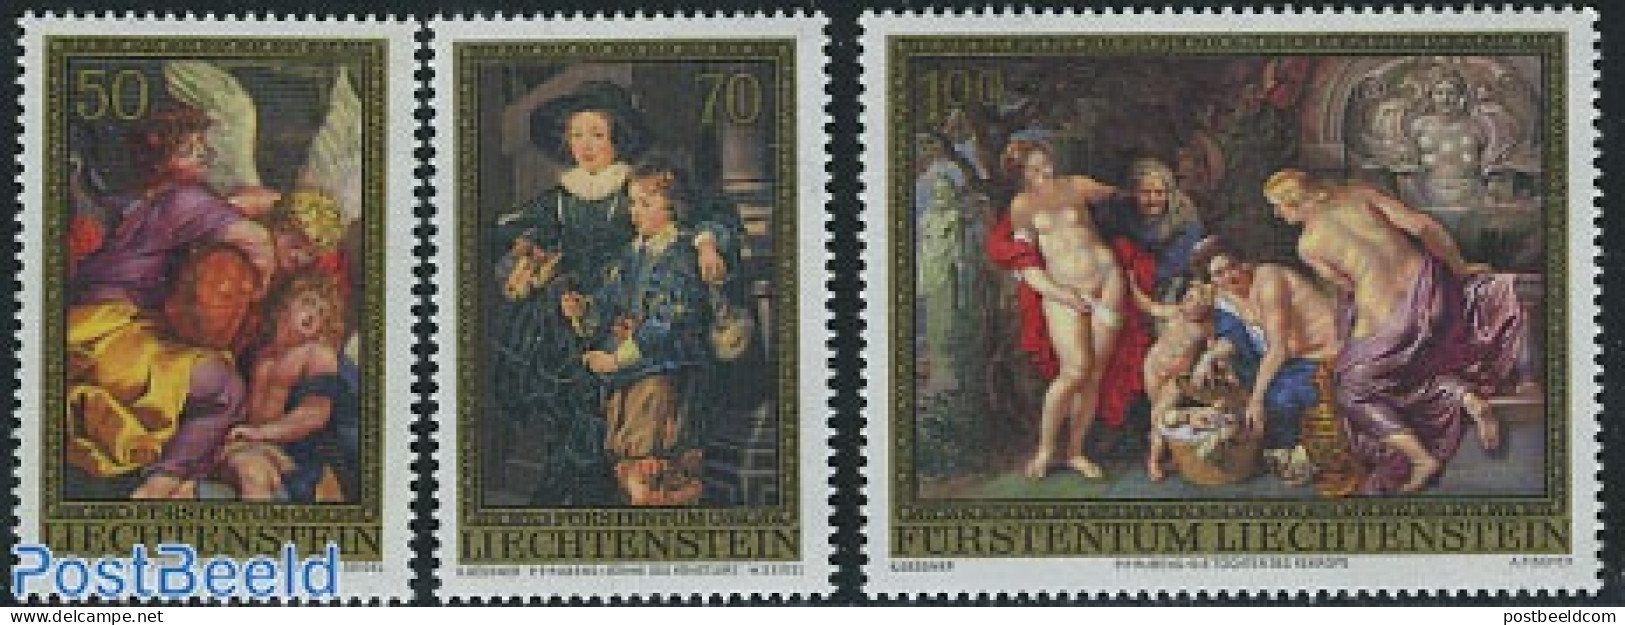 Liechtenstein 1976 P.P. Rubens Paintings 3v, Mint NH, Art - Paintings - Rubens - Neufs